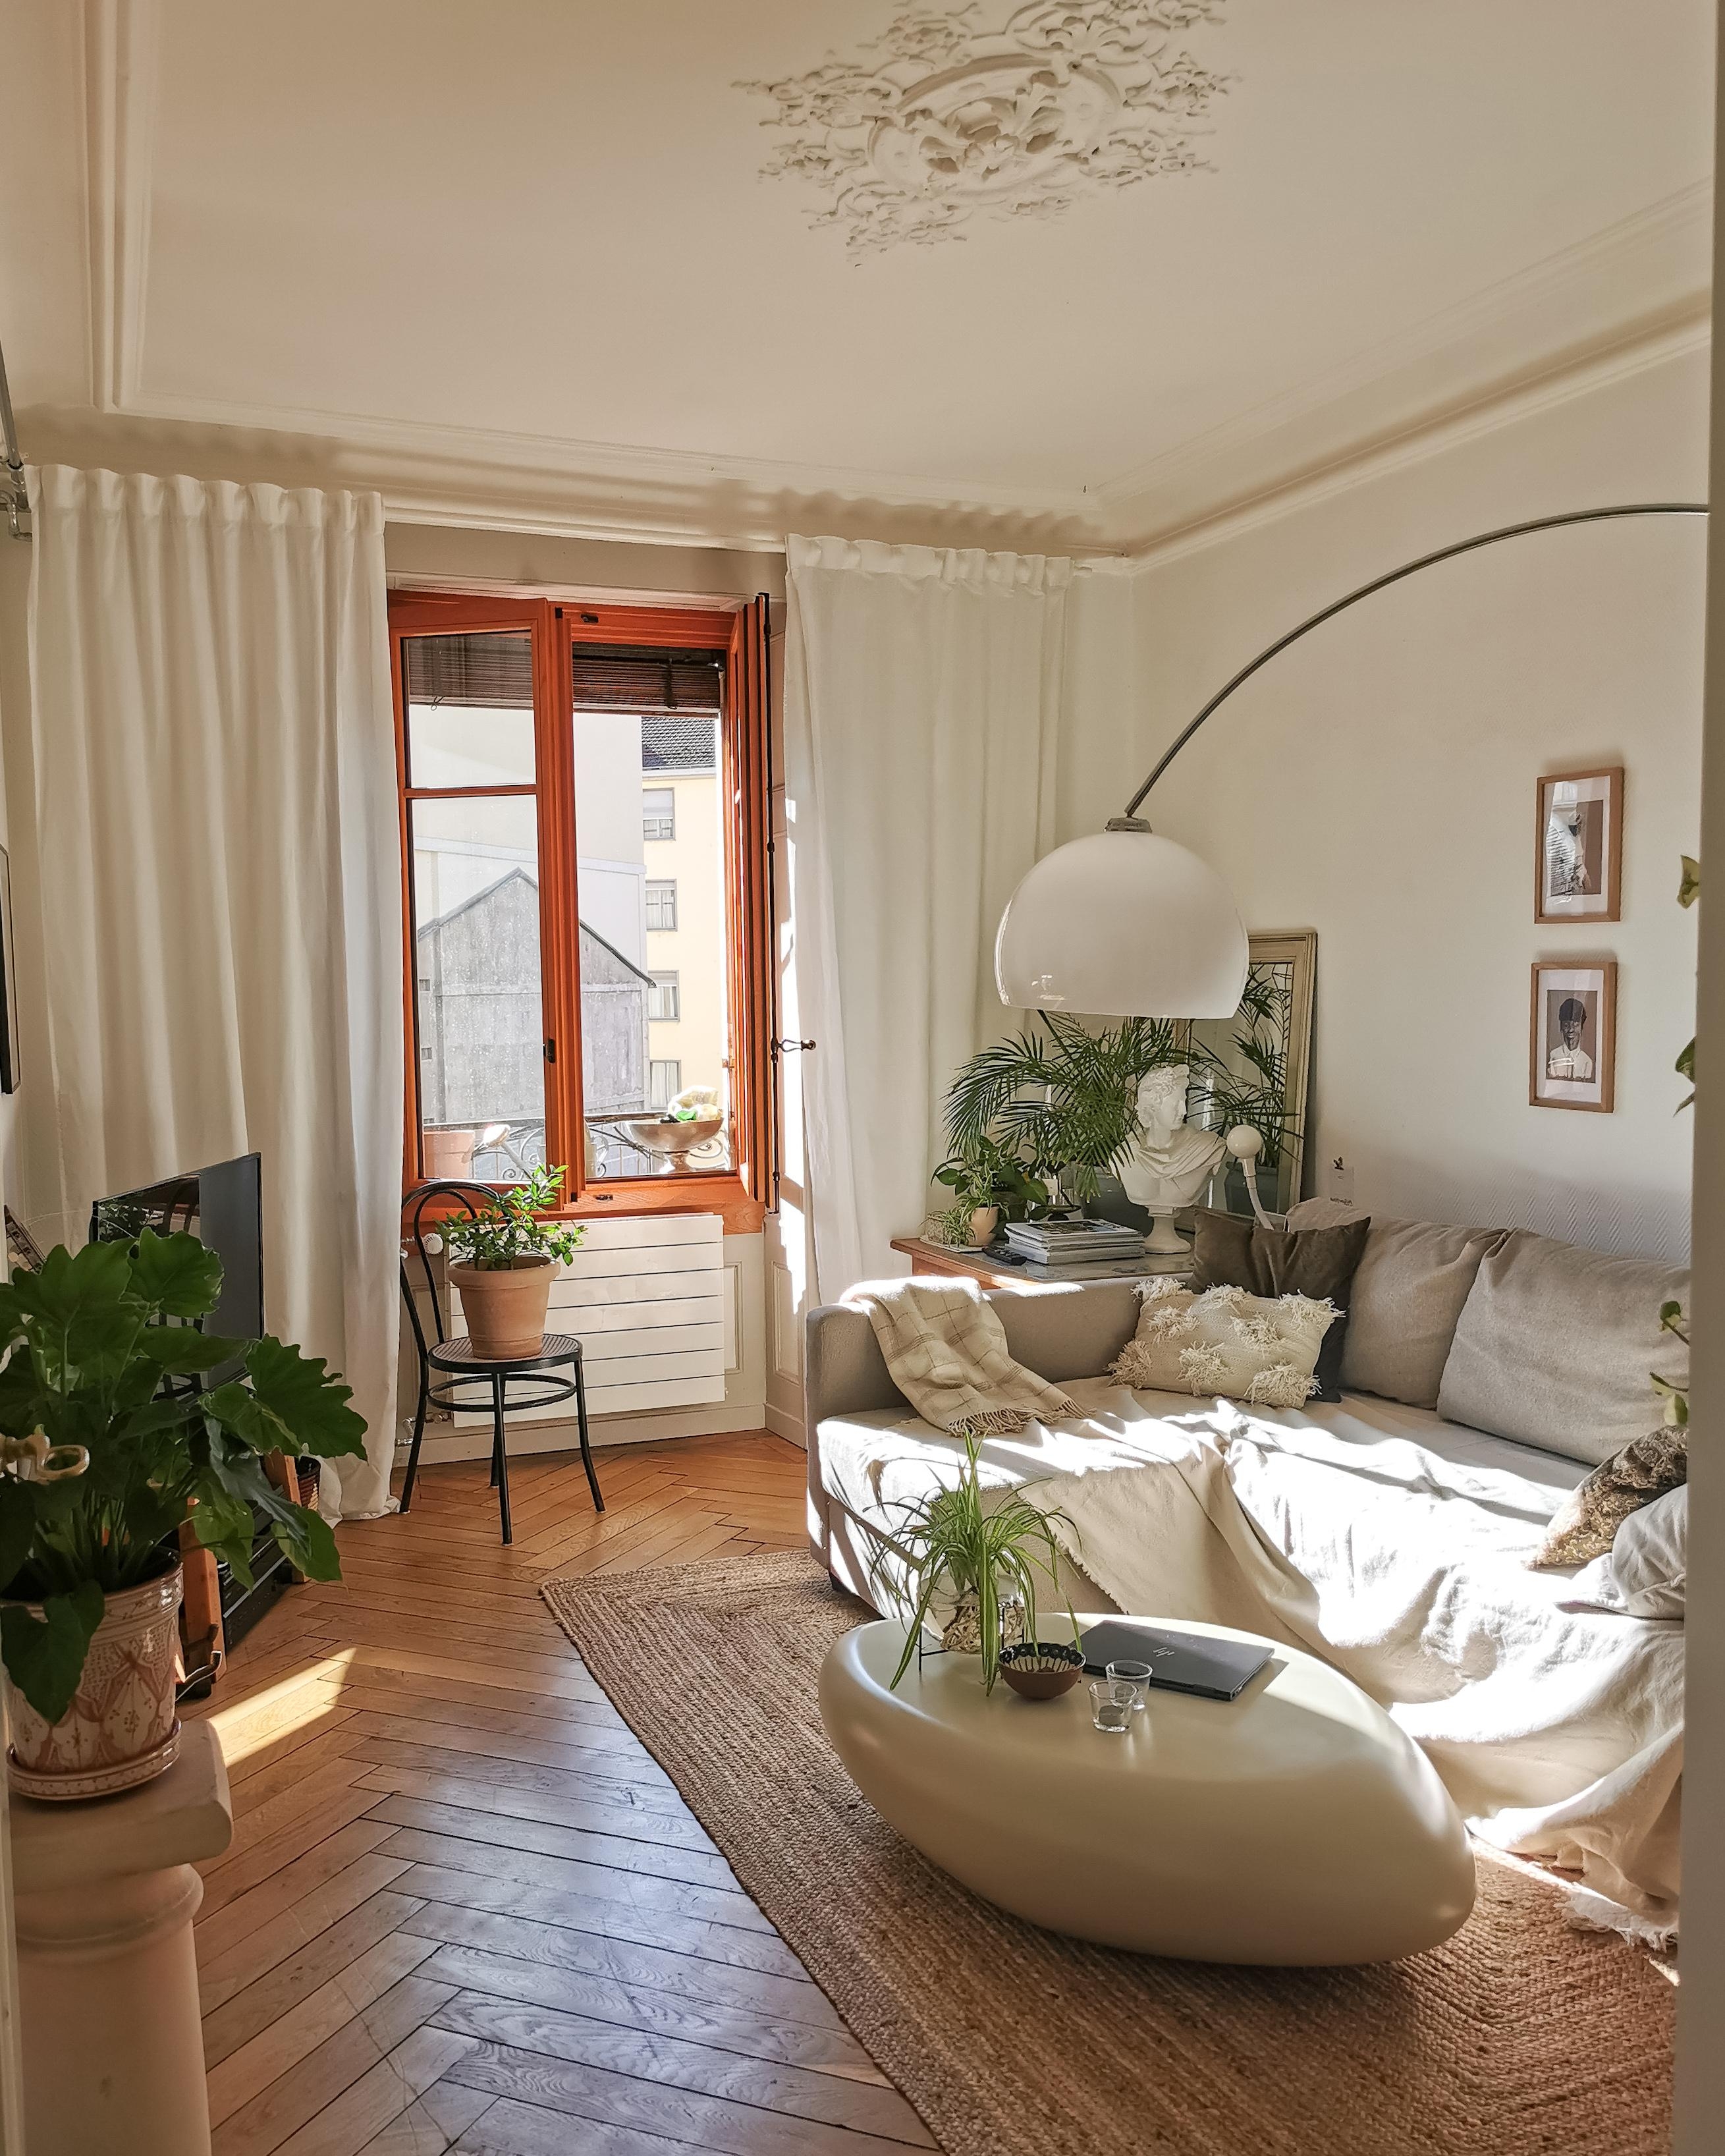 Wohnzimmer 🌿😌 #happyweekend #sofa #bogenlampe #pflanzenliebe #juteteppich #naturalinterior #steintisch